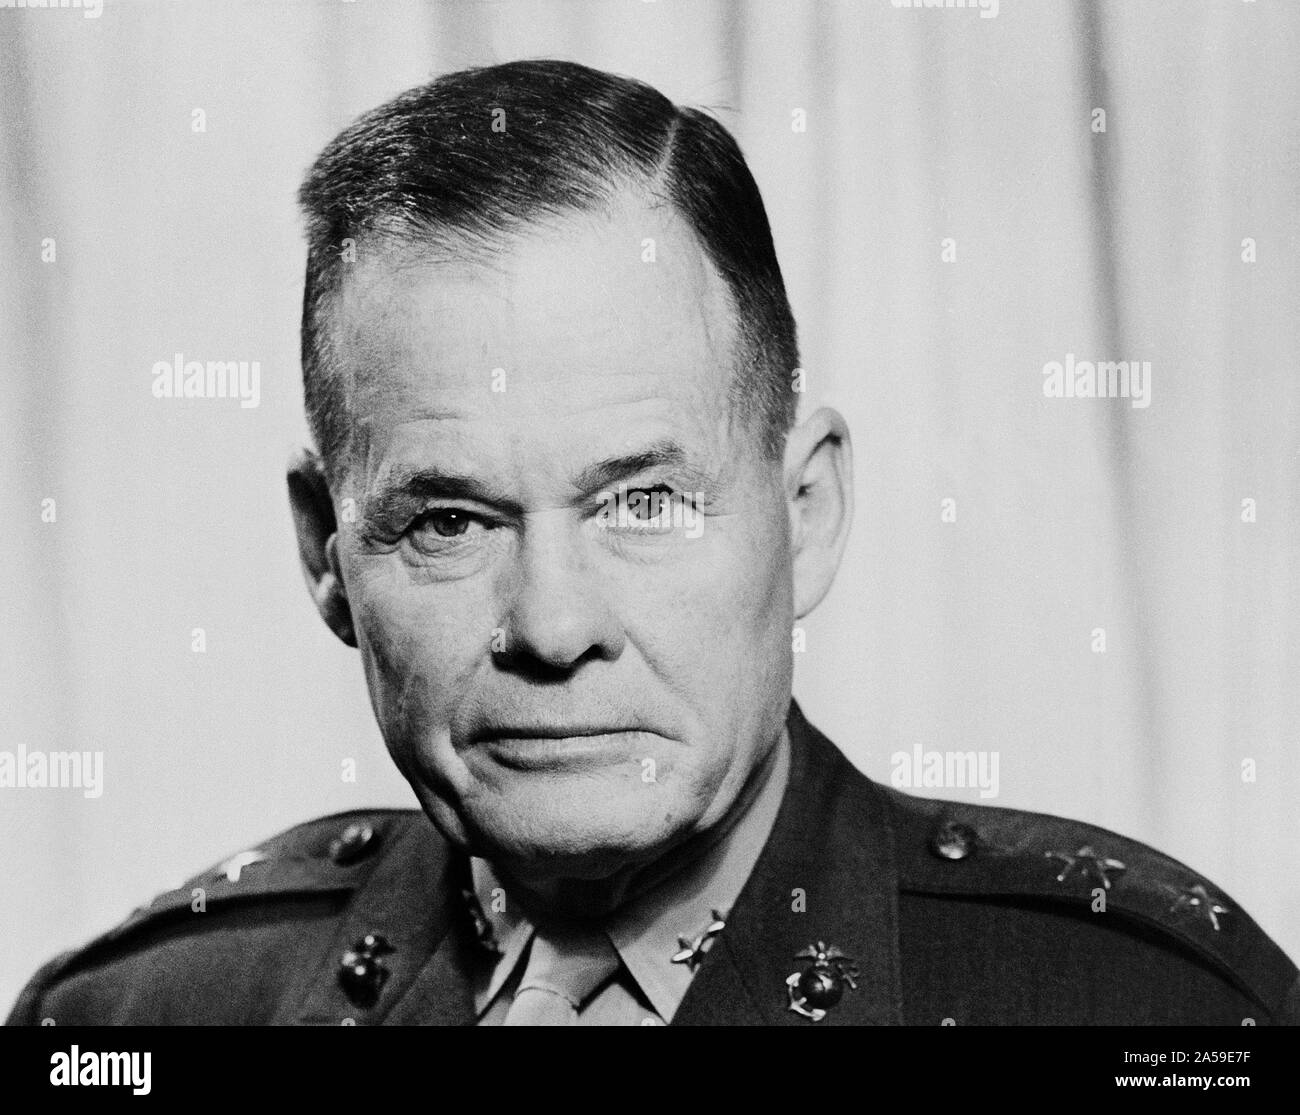 1953 - Major General Lewis B. "CHESTY" Puller, USMC (unbedeckt) Stockfoto